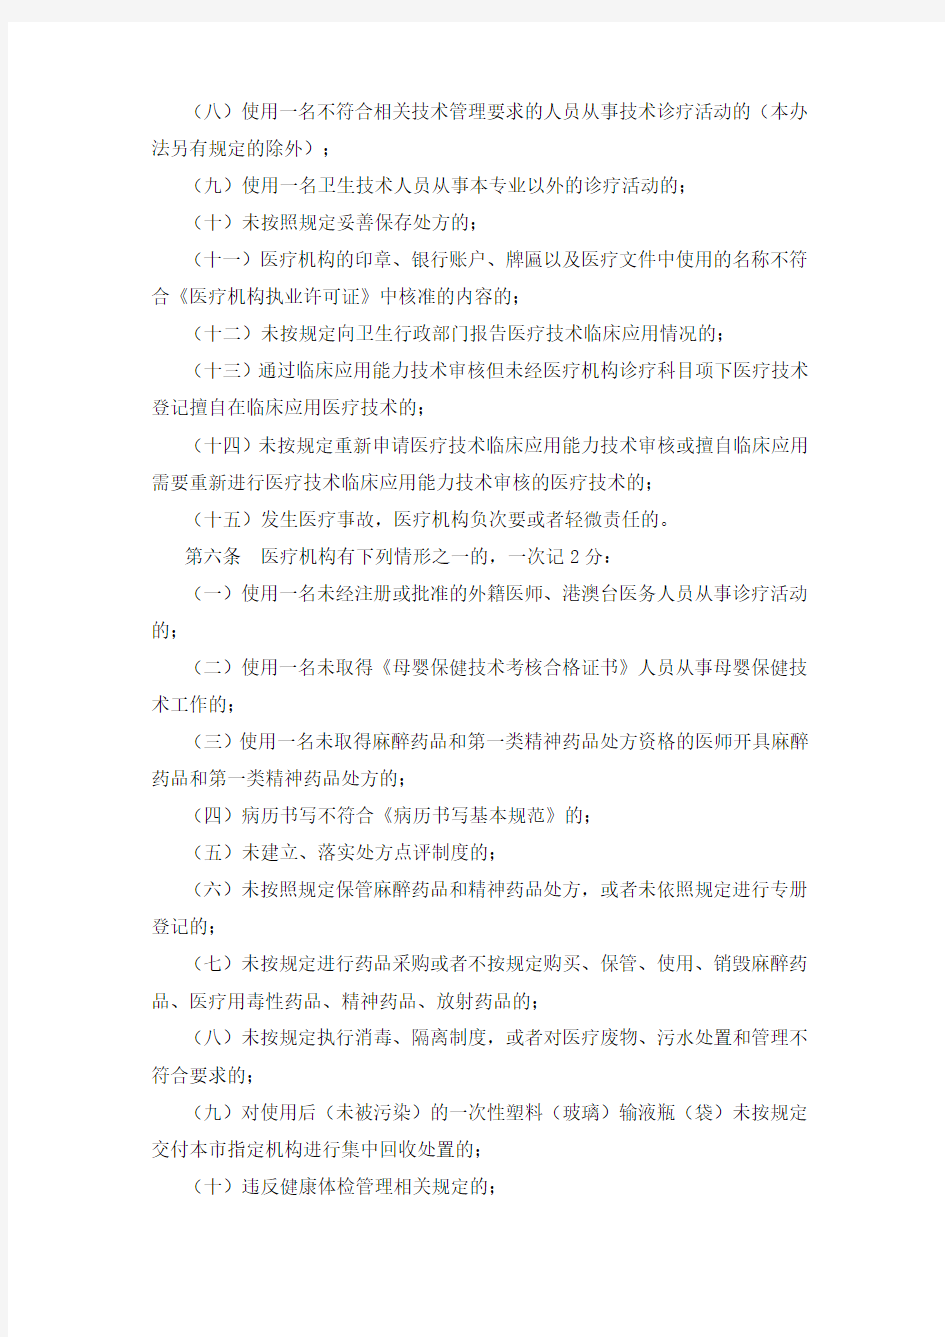 上海市医疗机构不良执业行为积分管理办法